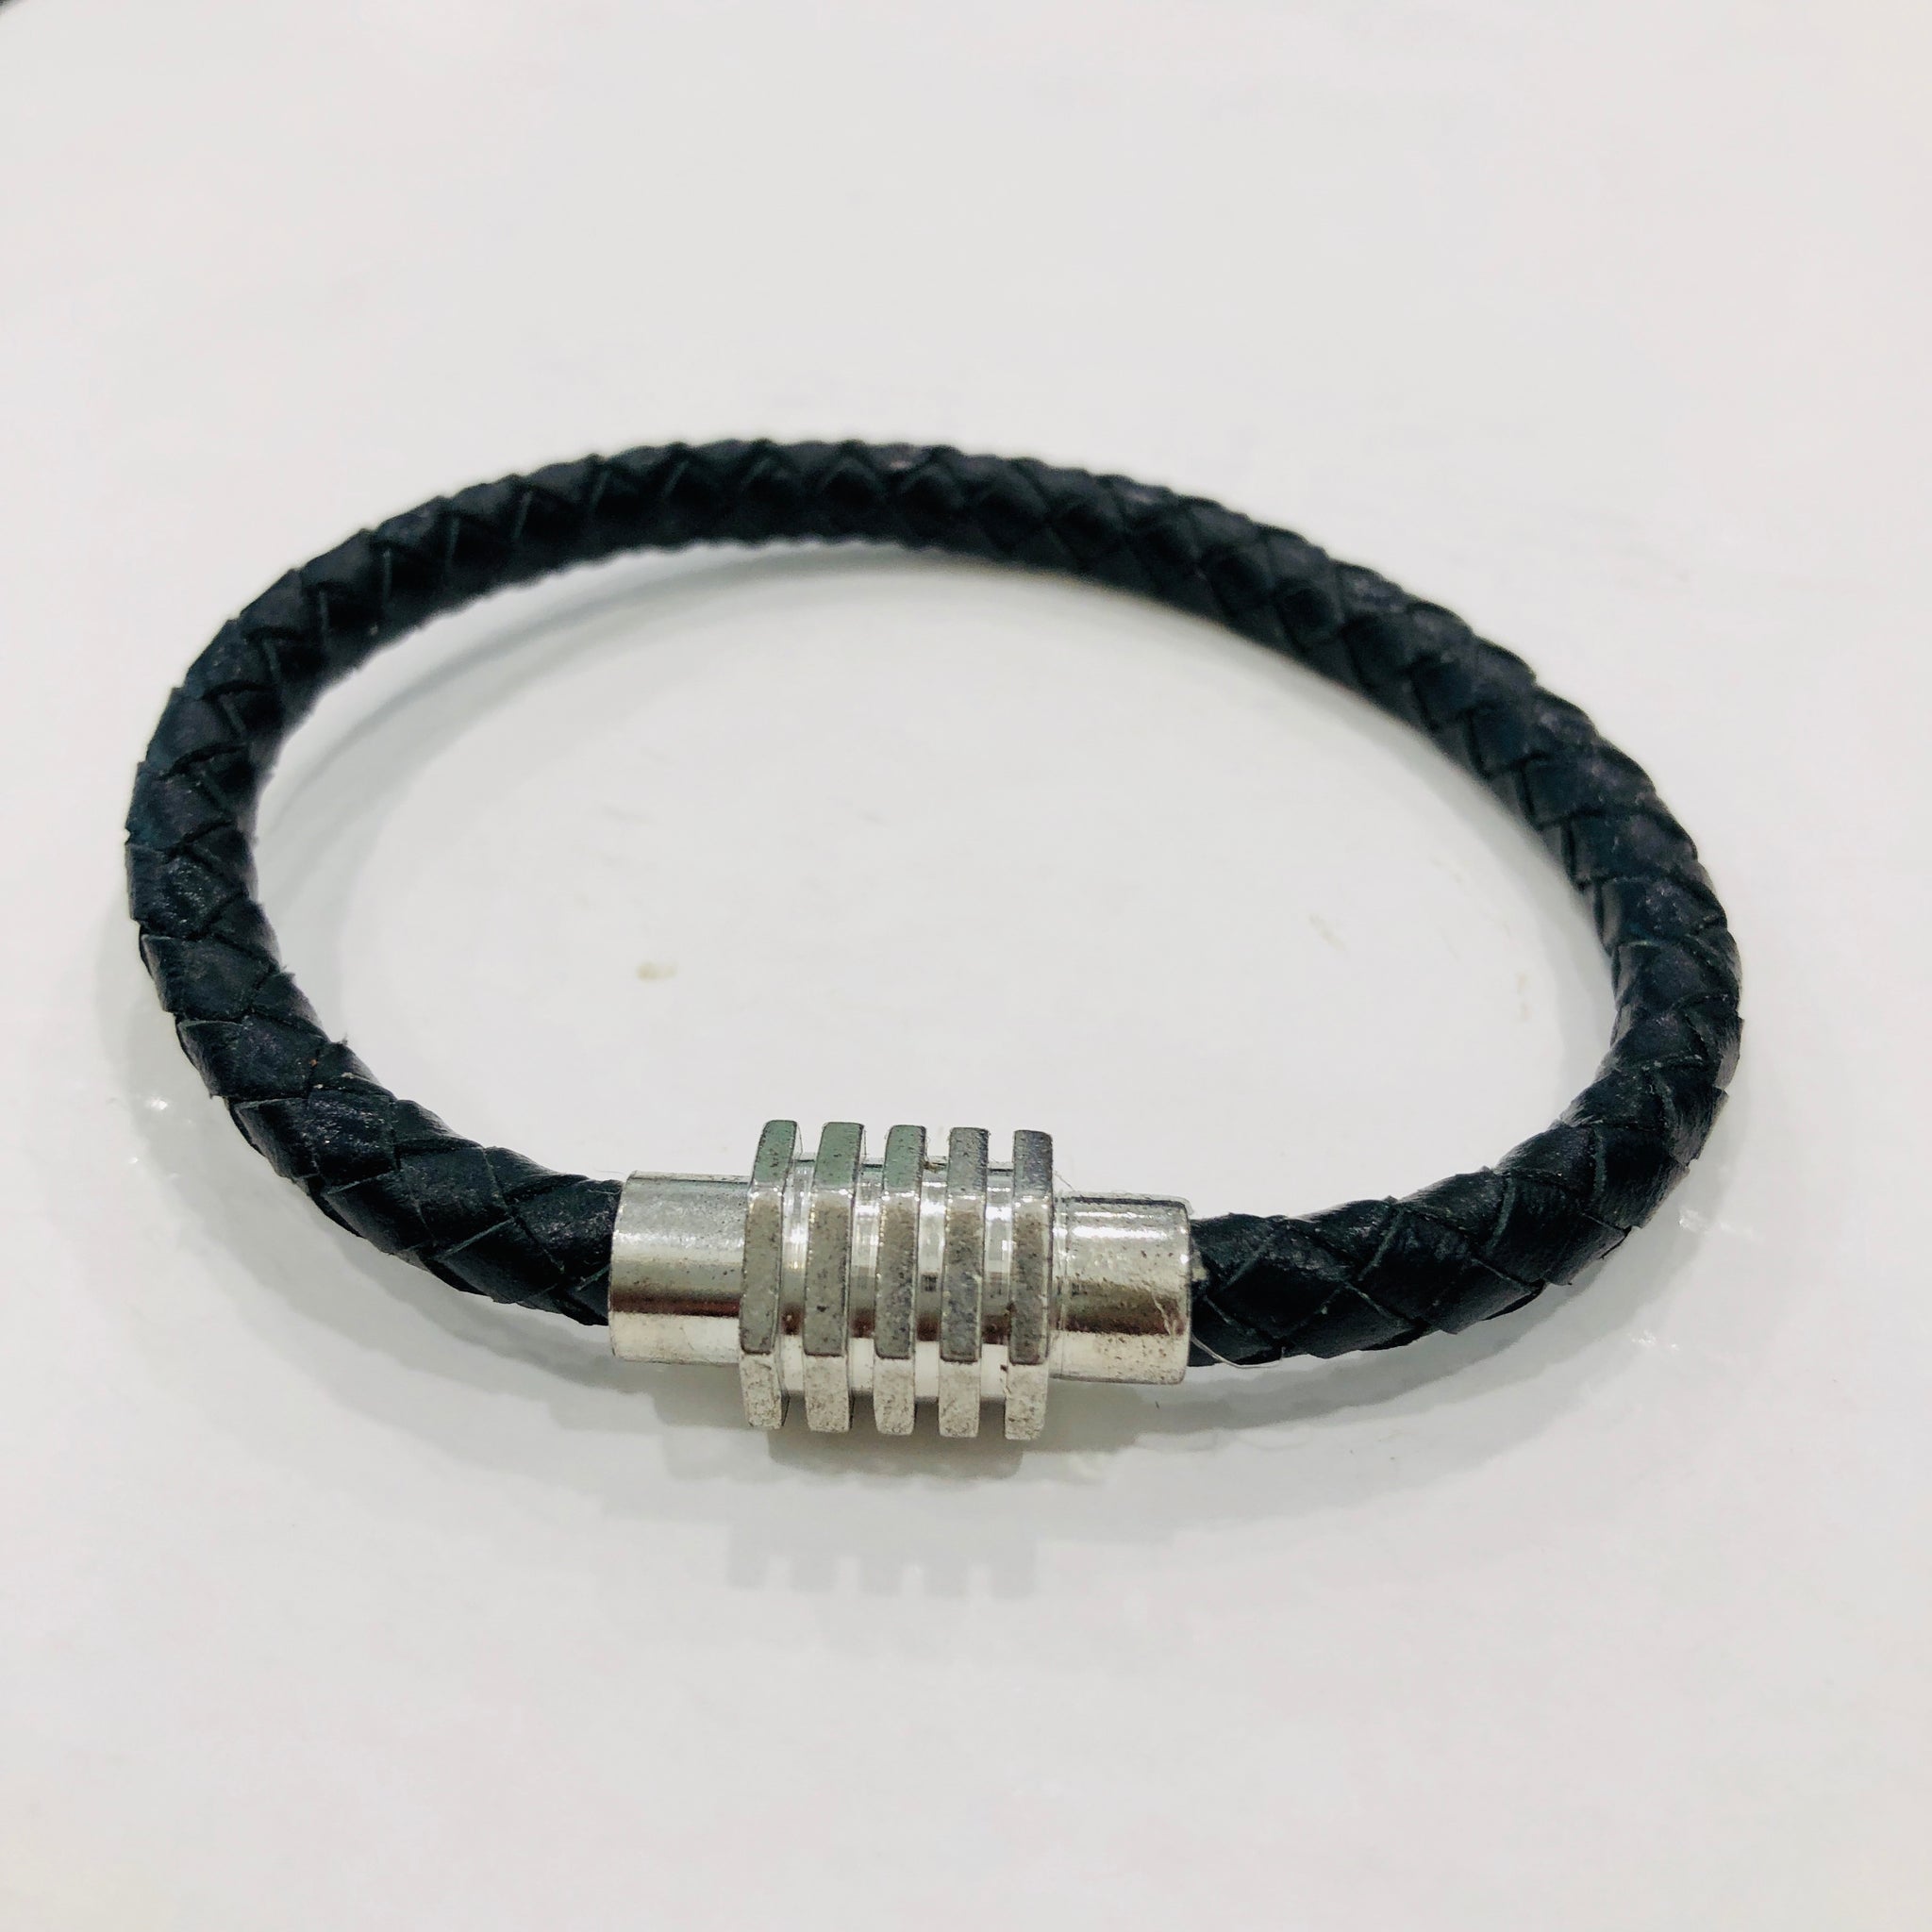 TM. Leather Plait Bracelet